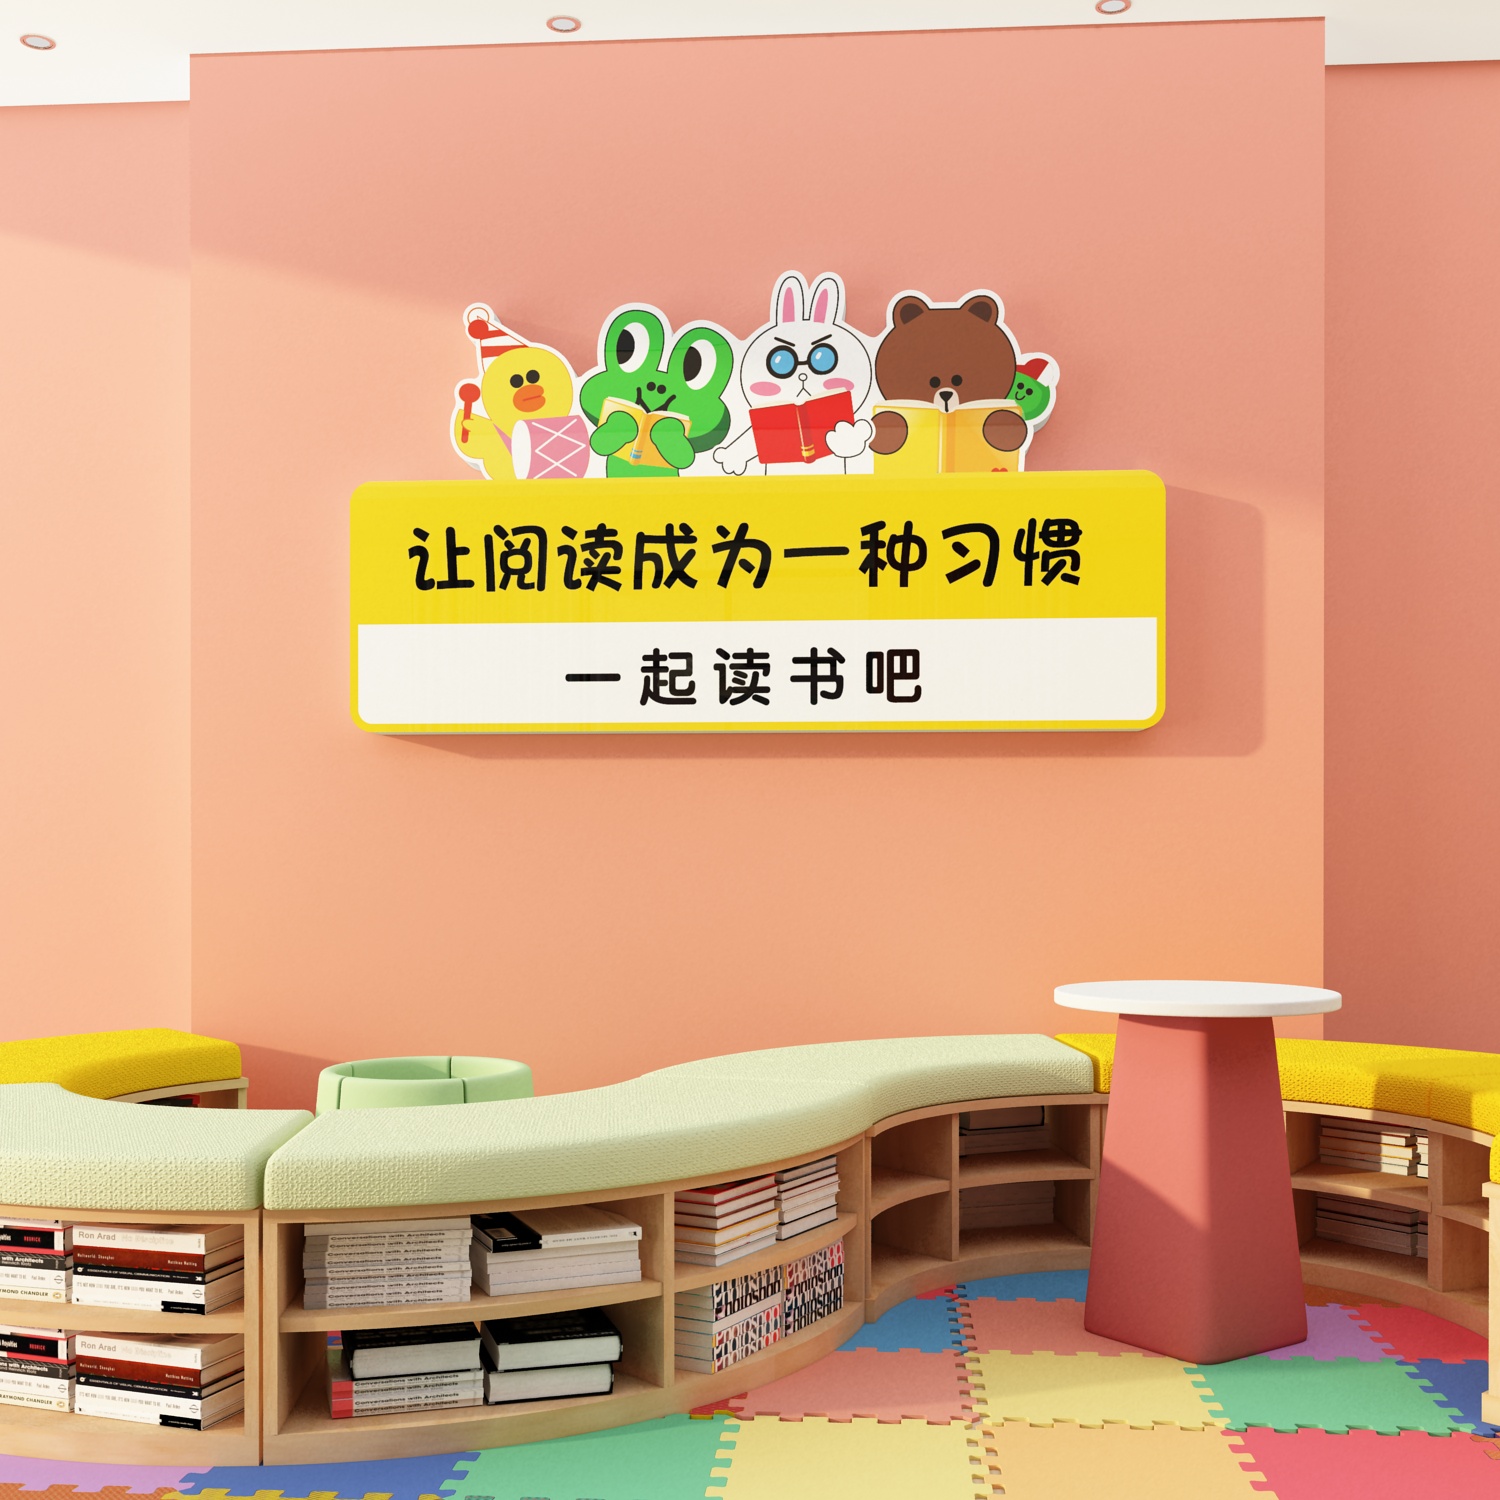 儿童阅览室布置图片